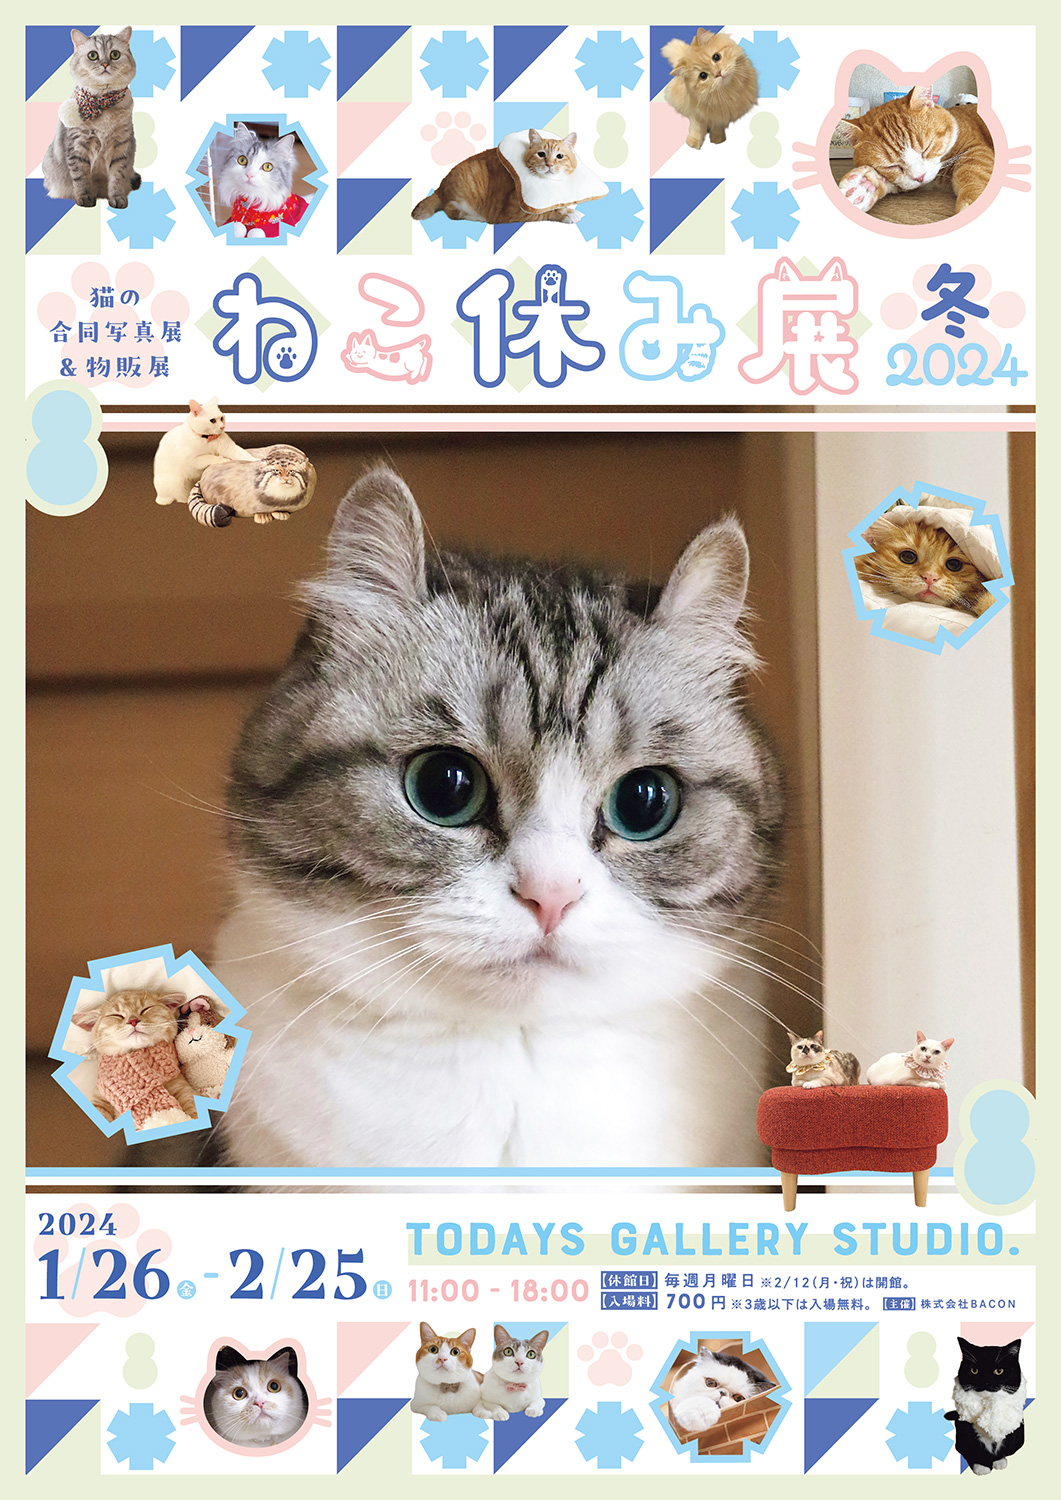 猫の絵 「ねこ no.4」 原画 - 絵画